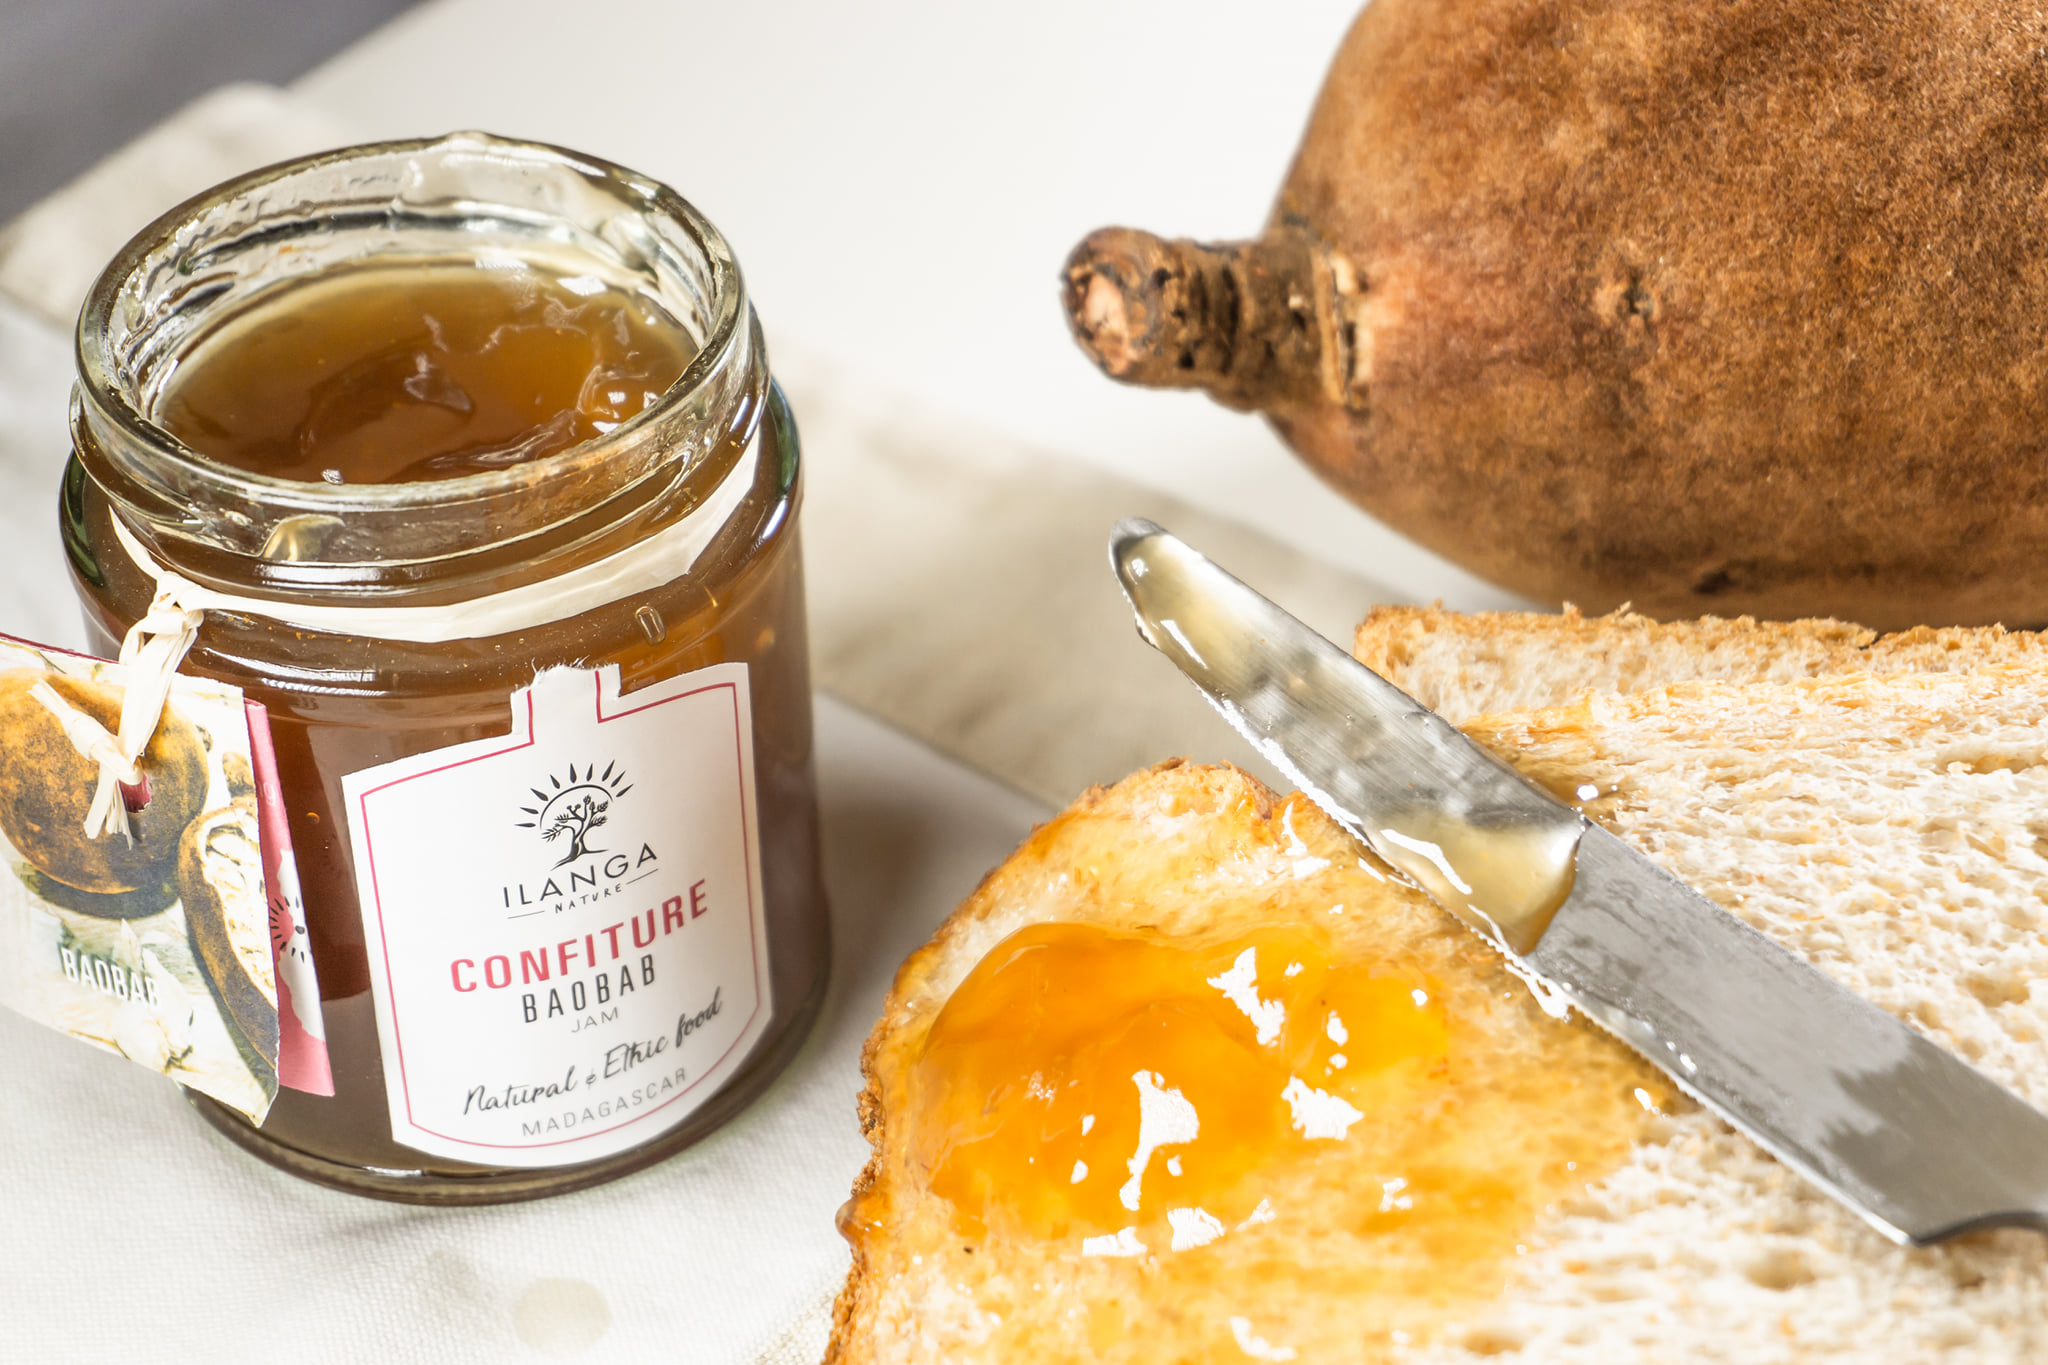 Ilanga Nature épicerie madagascar miel vanille poivre